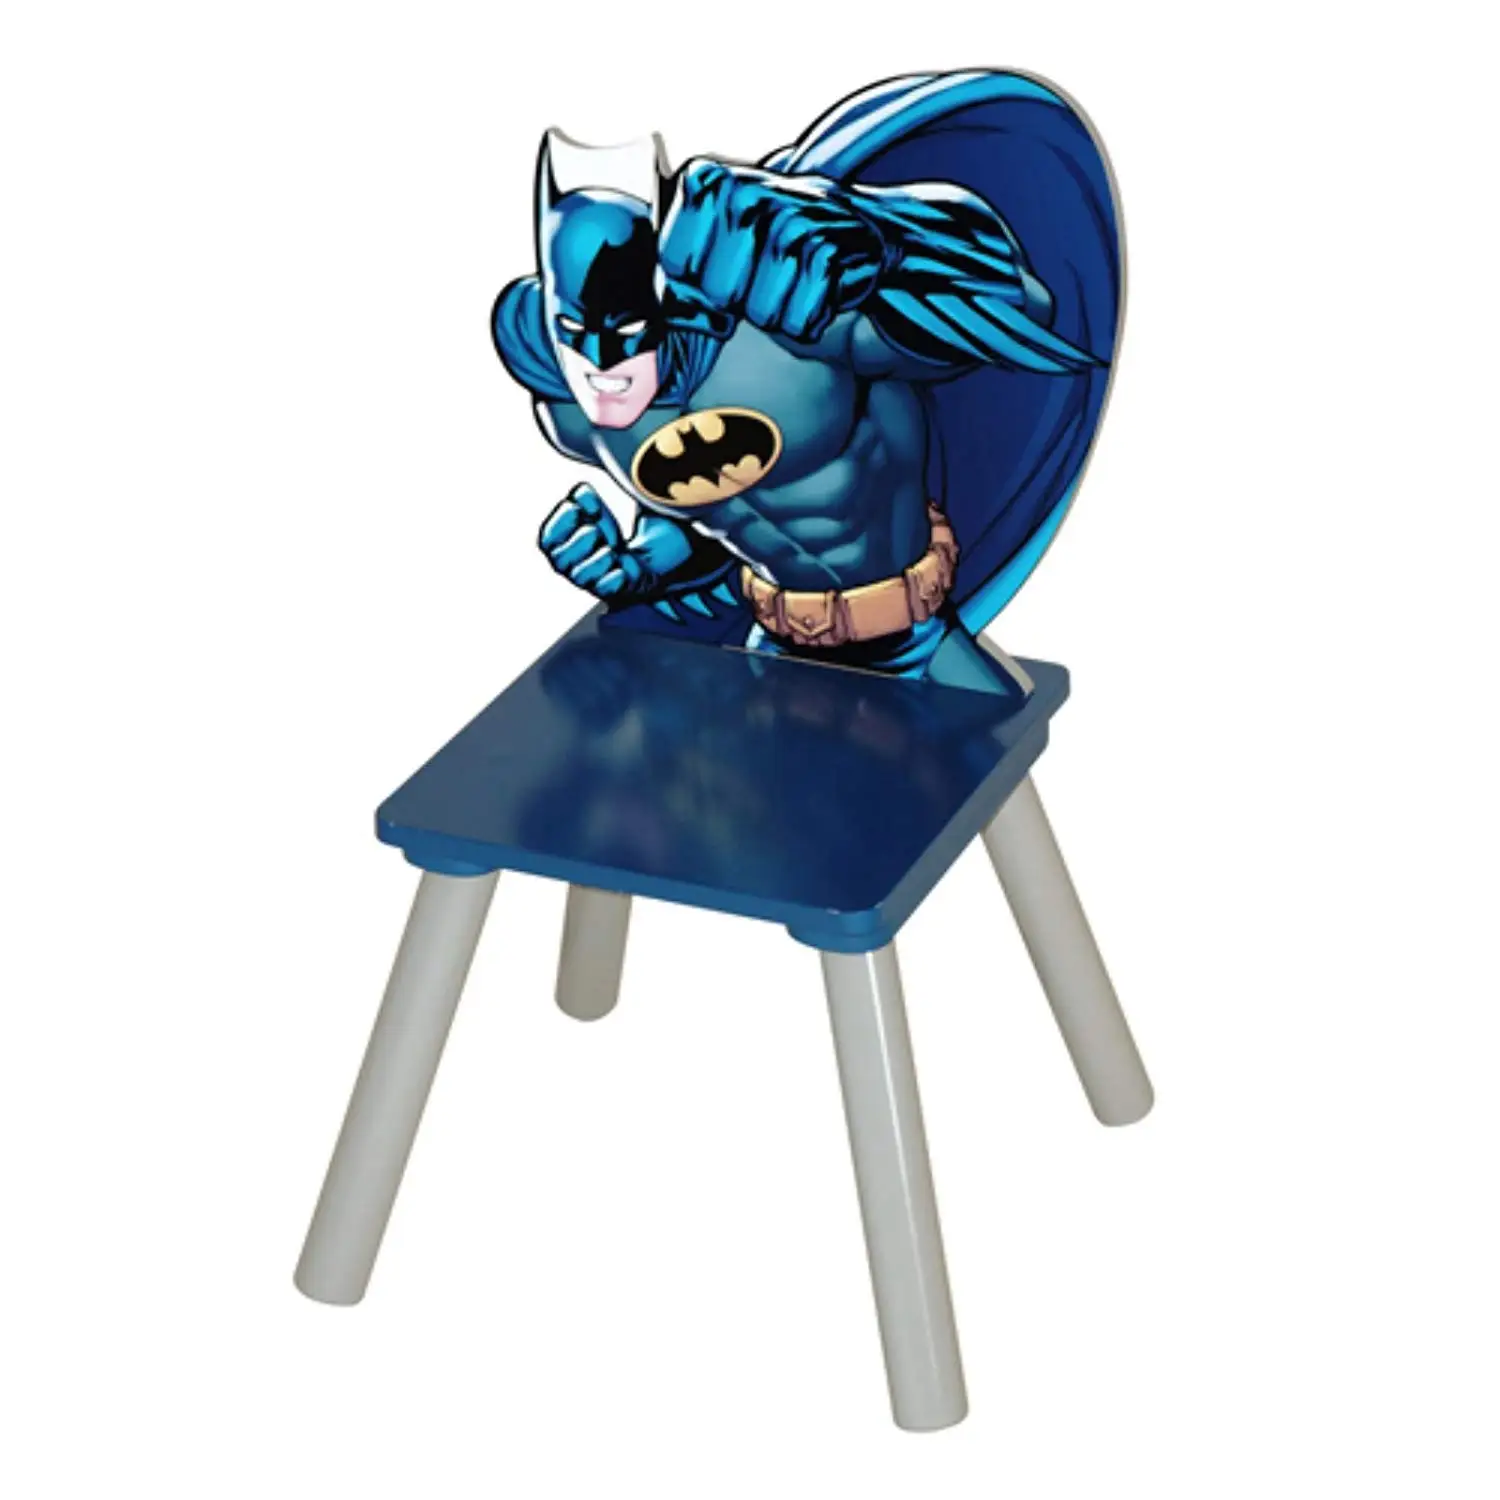 Cheap Batman Chair, find Batman Chair deals on line at